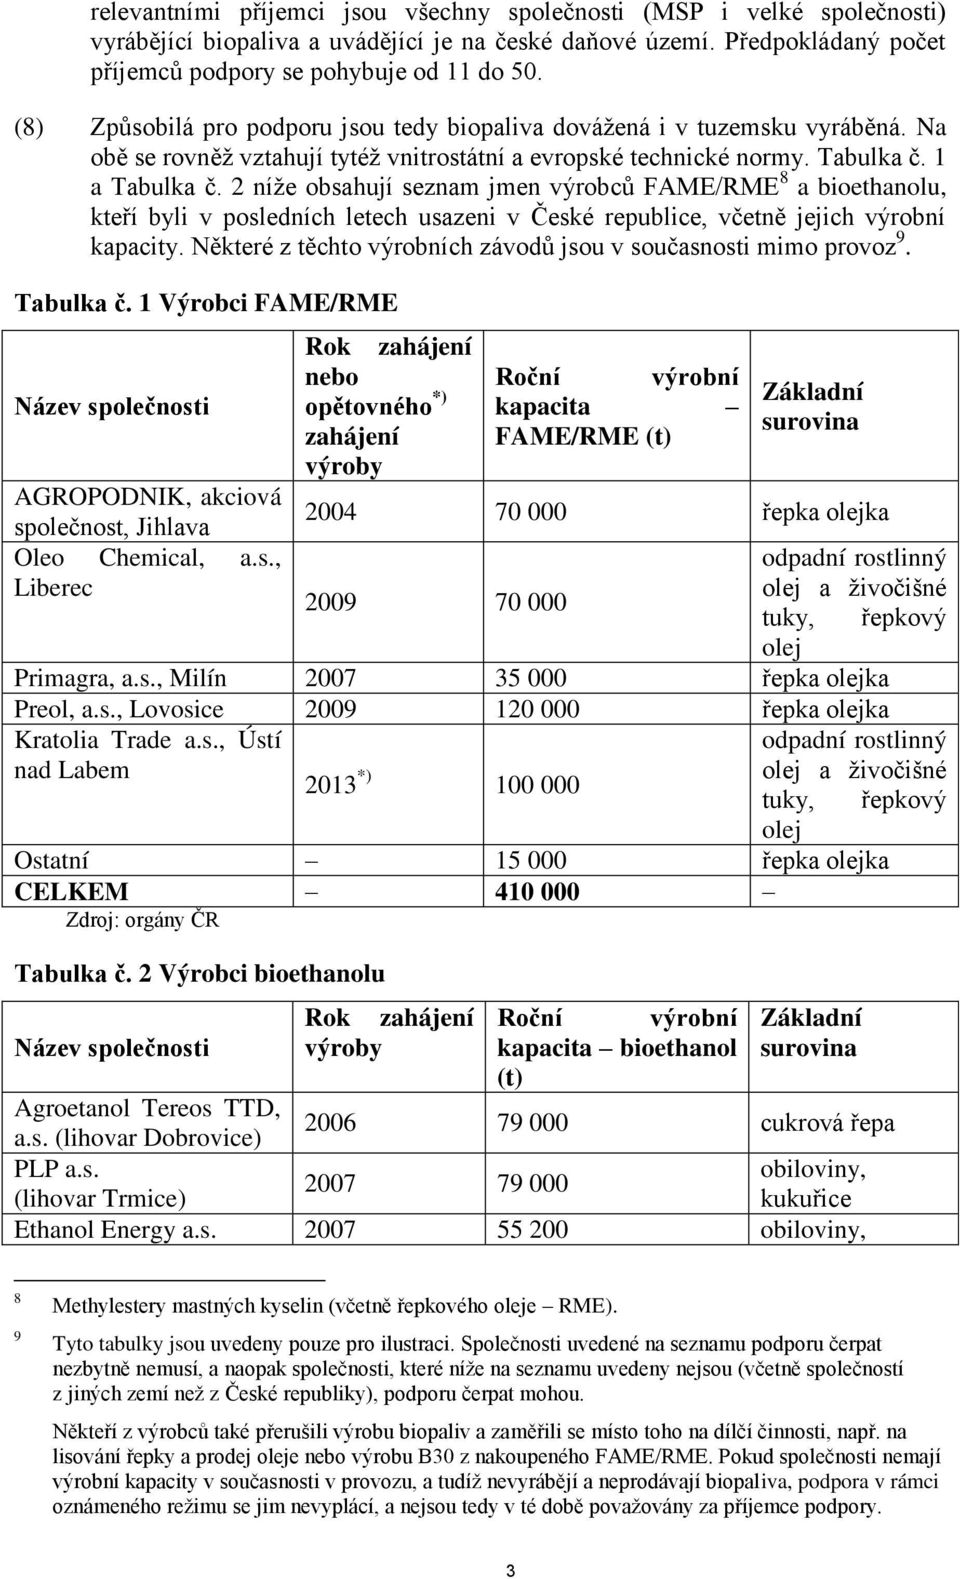 2 níže obsahují seznam jmen výrobců FAME/RME 8 a bioethanolu, kteří byli v posledních letech usazeni v České republice, včetně jejich výrobní kapacity.